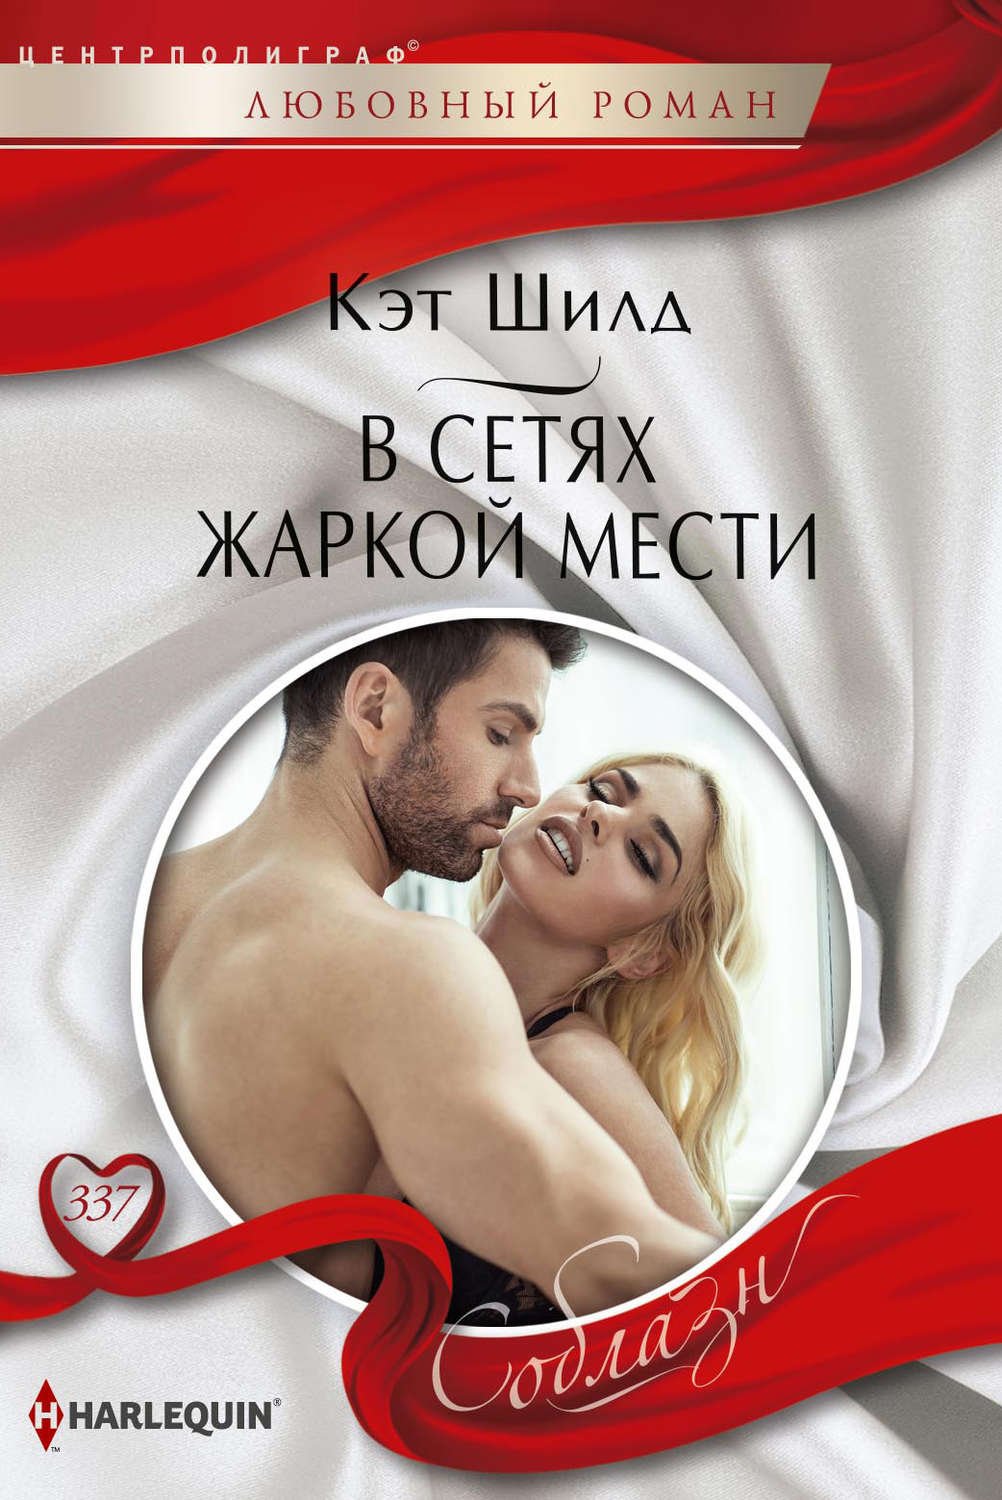 Ljubavni romani besplatno čitanje - 🧡 Maya bijou fuck - ♥ filbox.download....